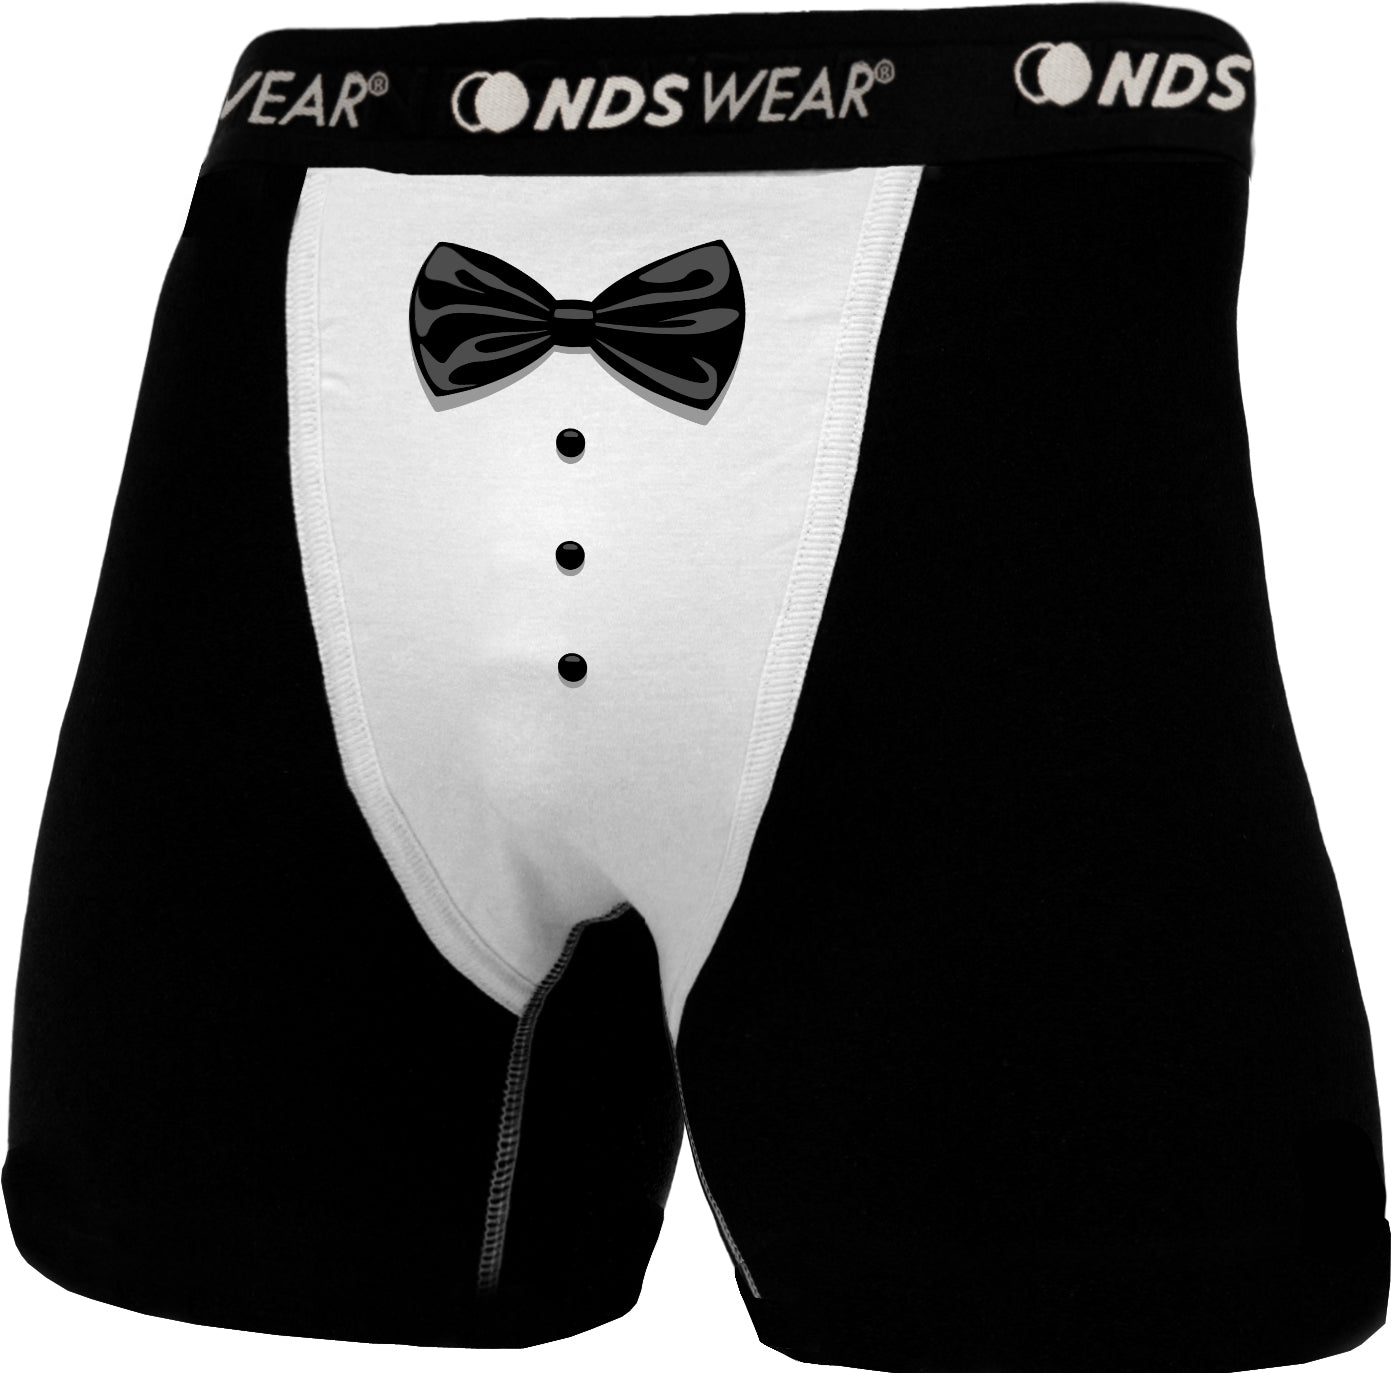 Black Tie Tuxedo Underwear Boxer Brief, Formal Tuxedo Undies - NDS WEAR